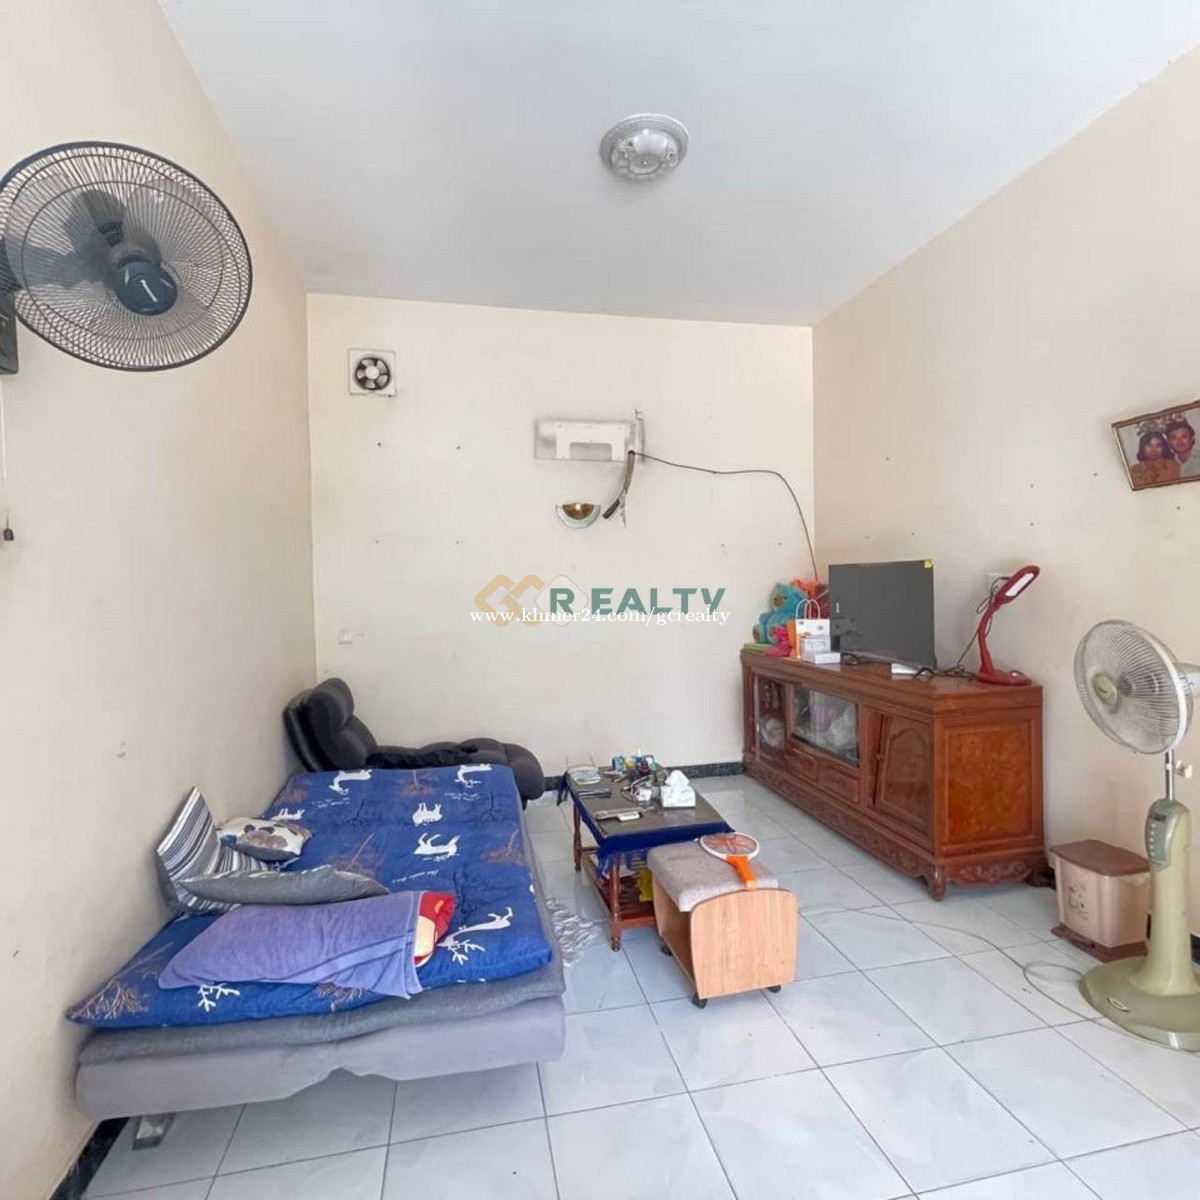 វីឡា សម្រាប់ជួល ទីតាំងនៅទួលទំពូង Villa For Rent at Toul Tom Pong area